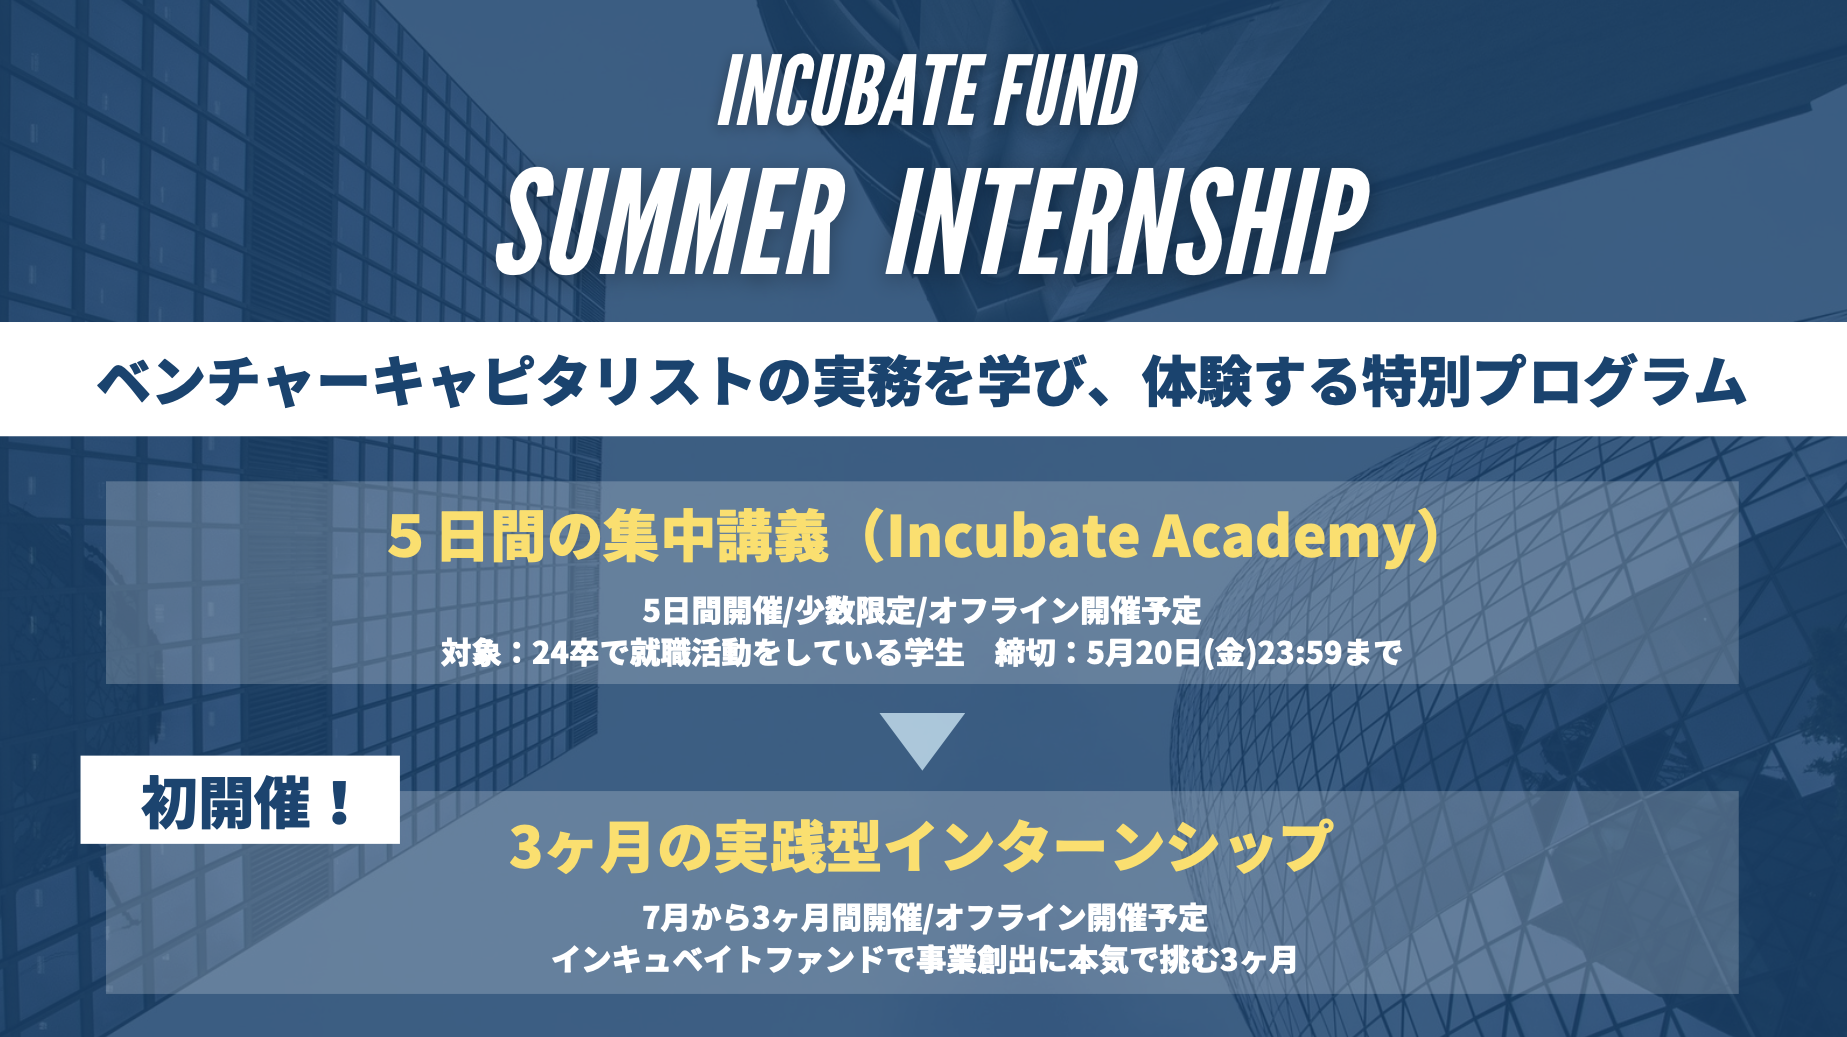 IncubateFund Summer Internship